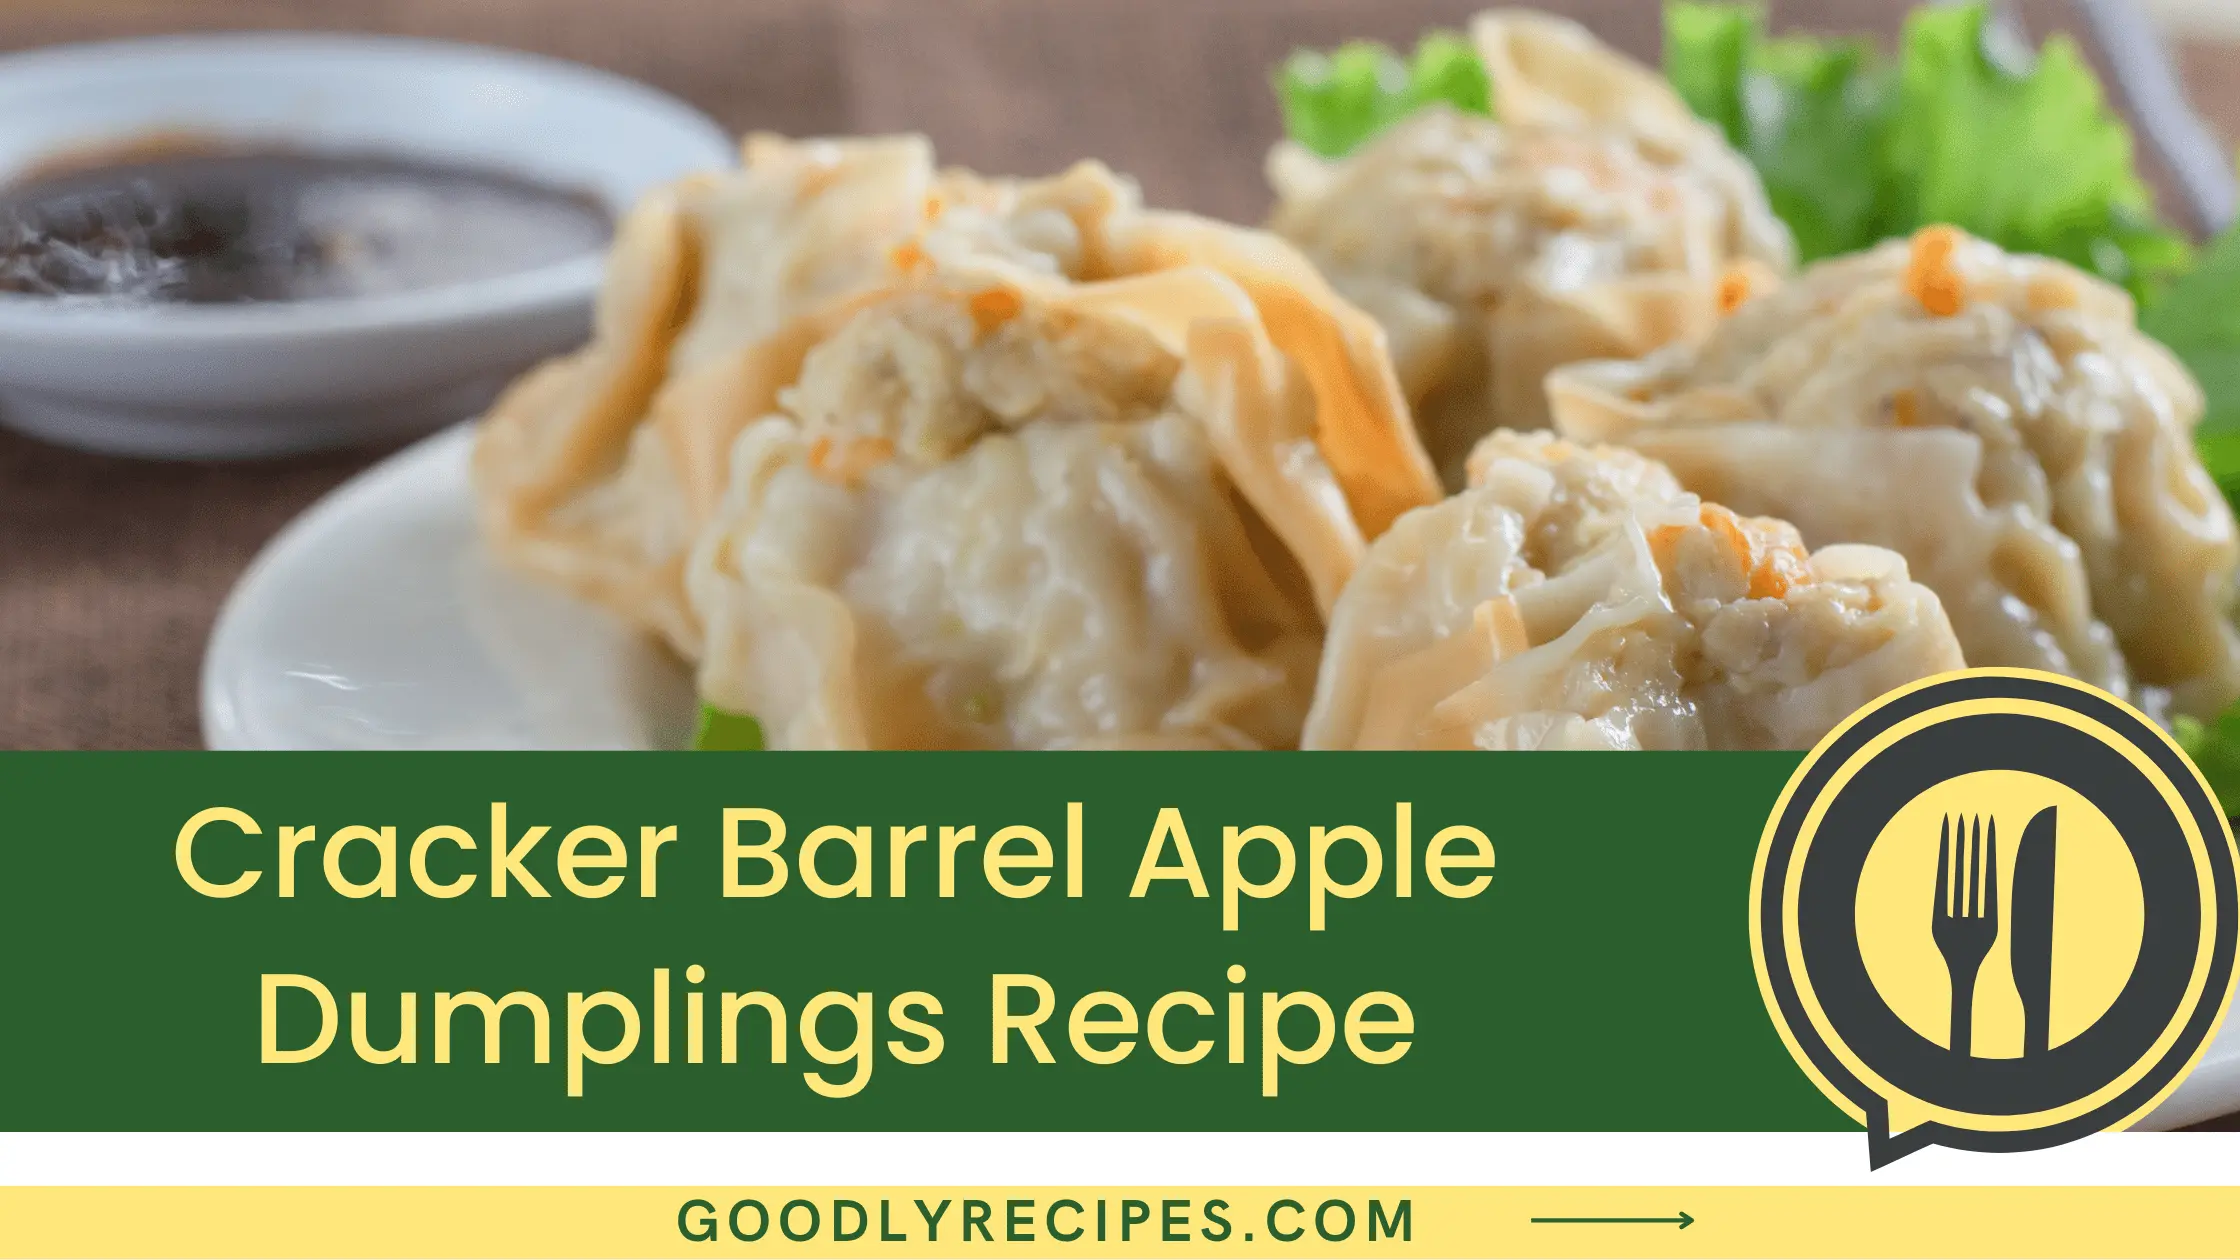 Cracker Barrel Apple Dumplings Recipe - For Food Lovers